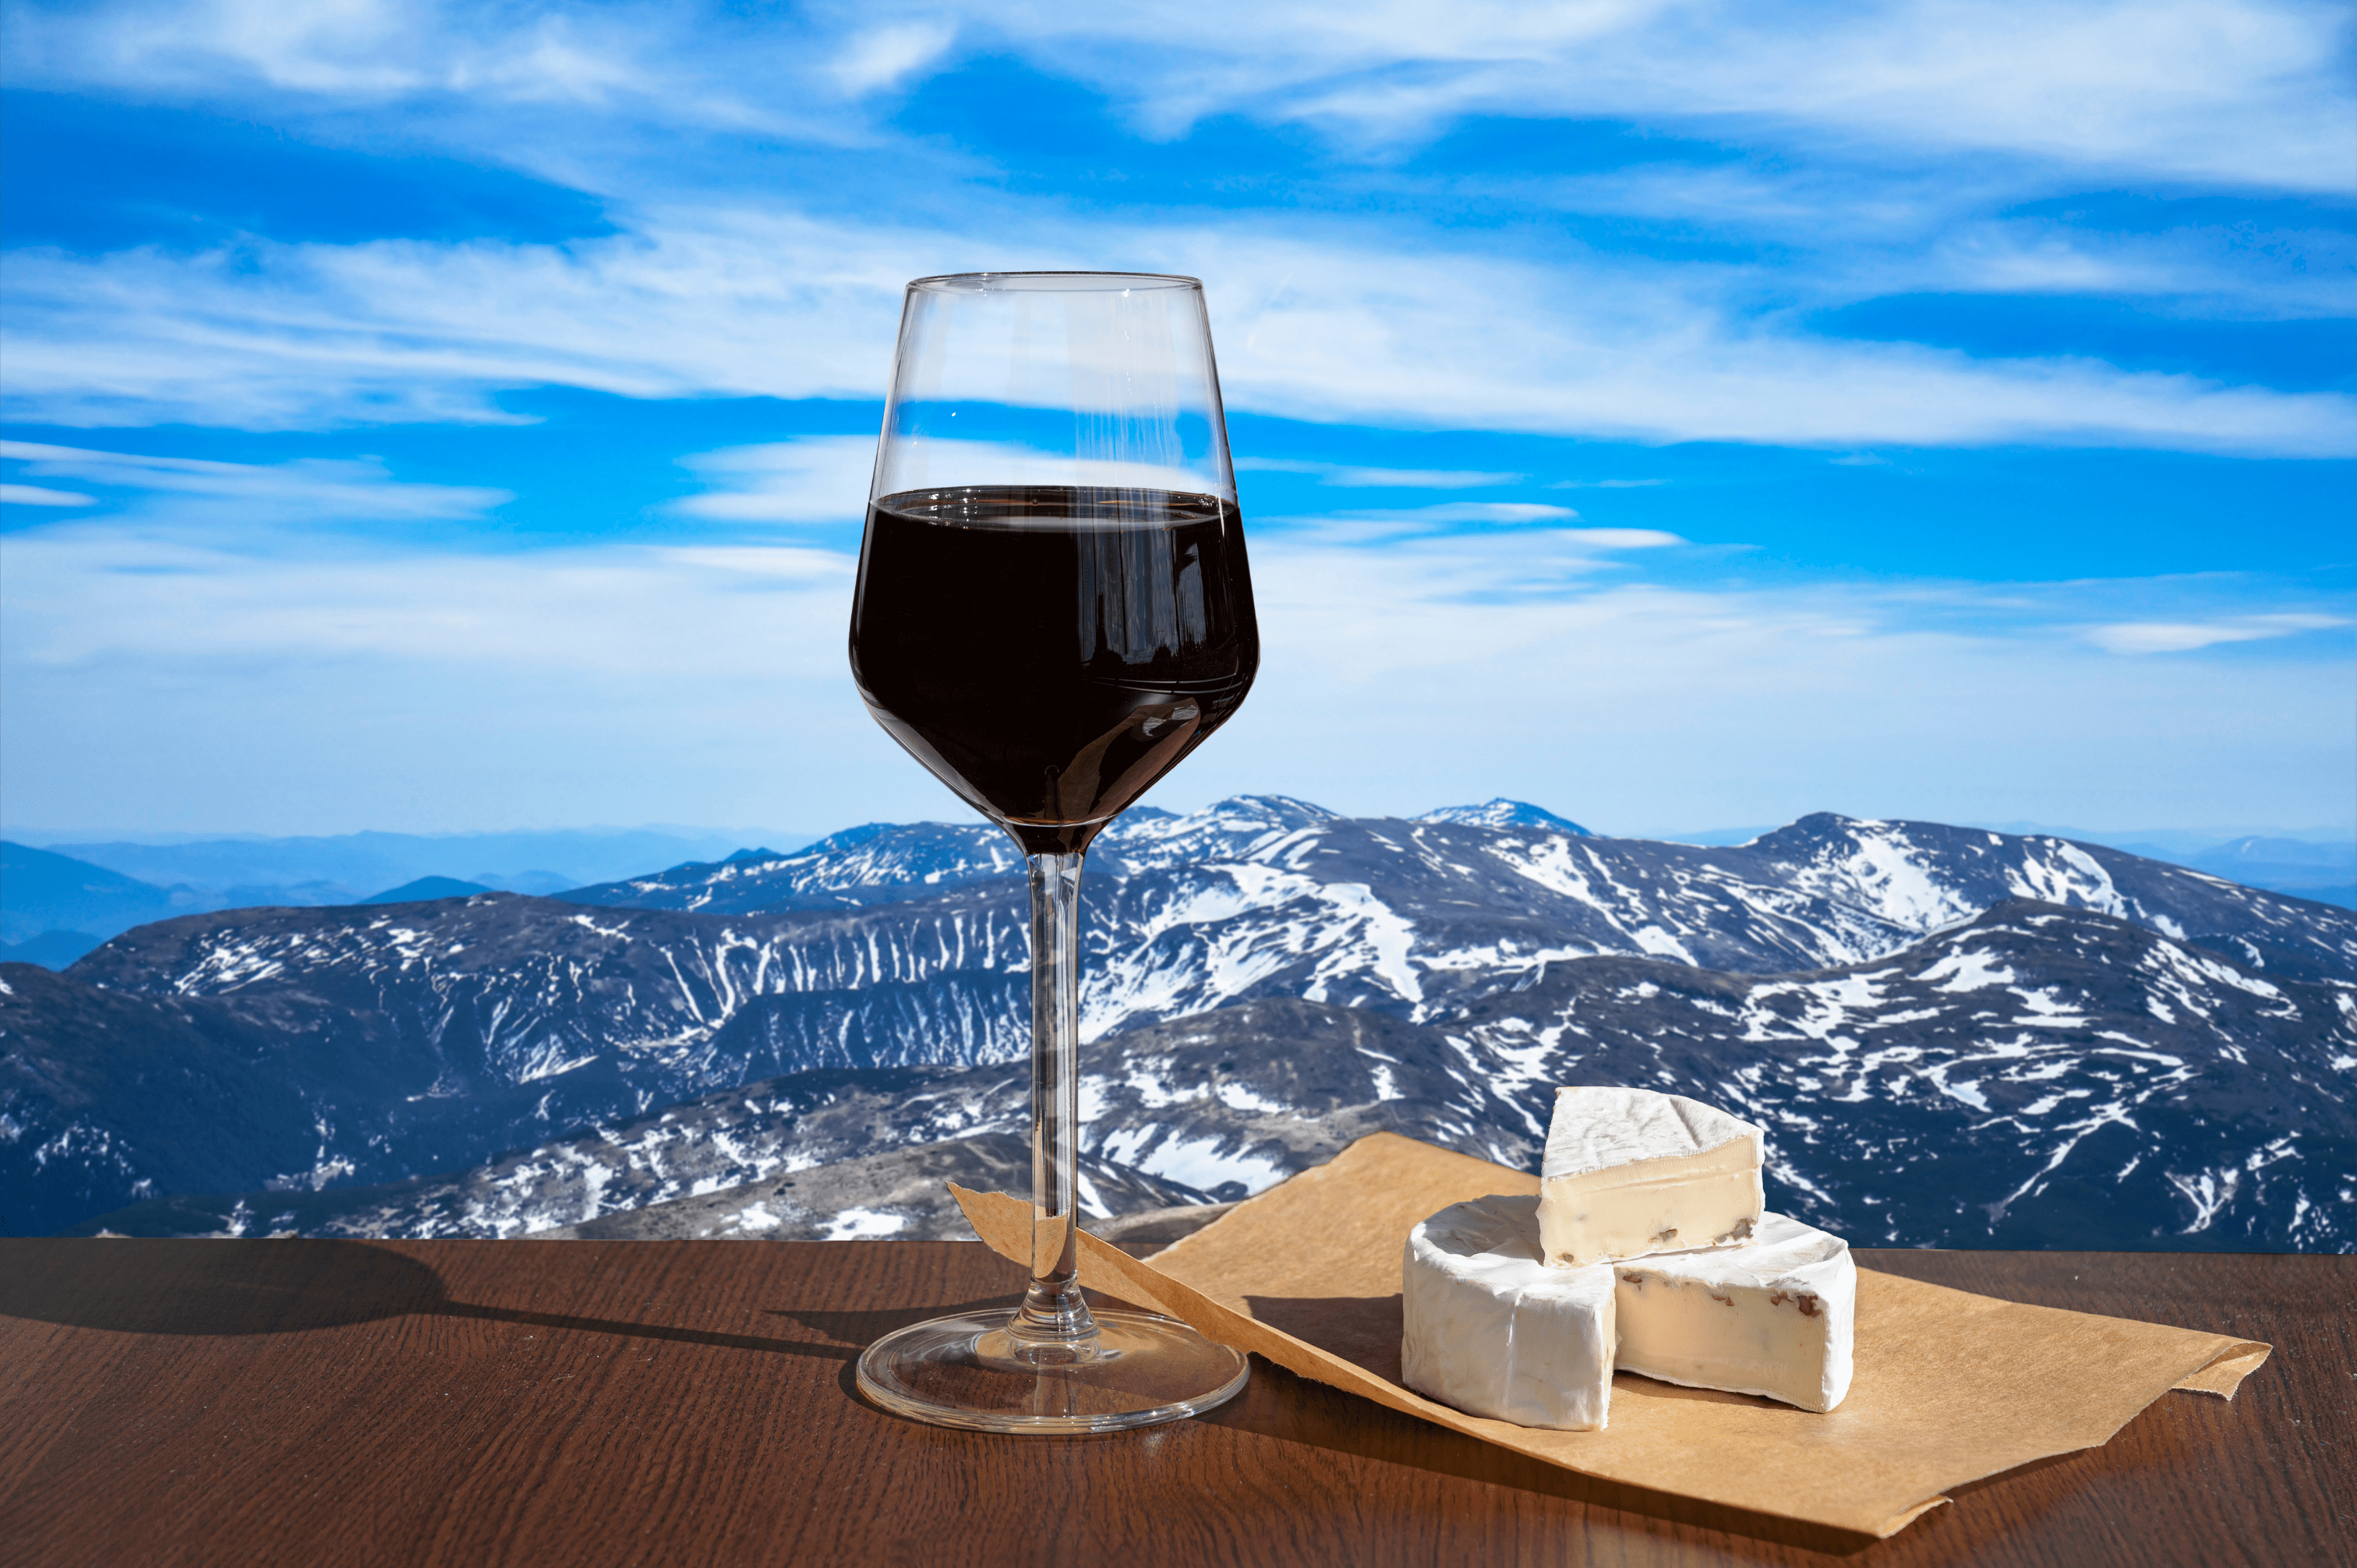 Verre de vin rouge et plateau de fromage devant une vue de montagnes enneigées